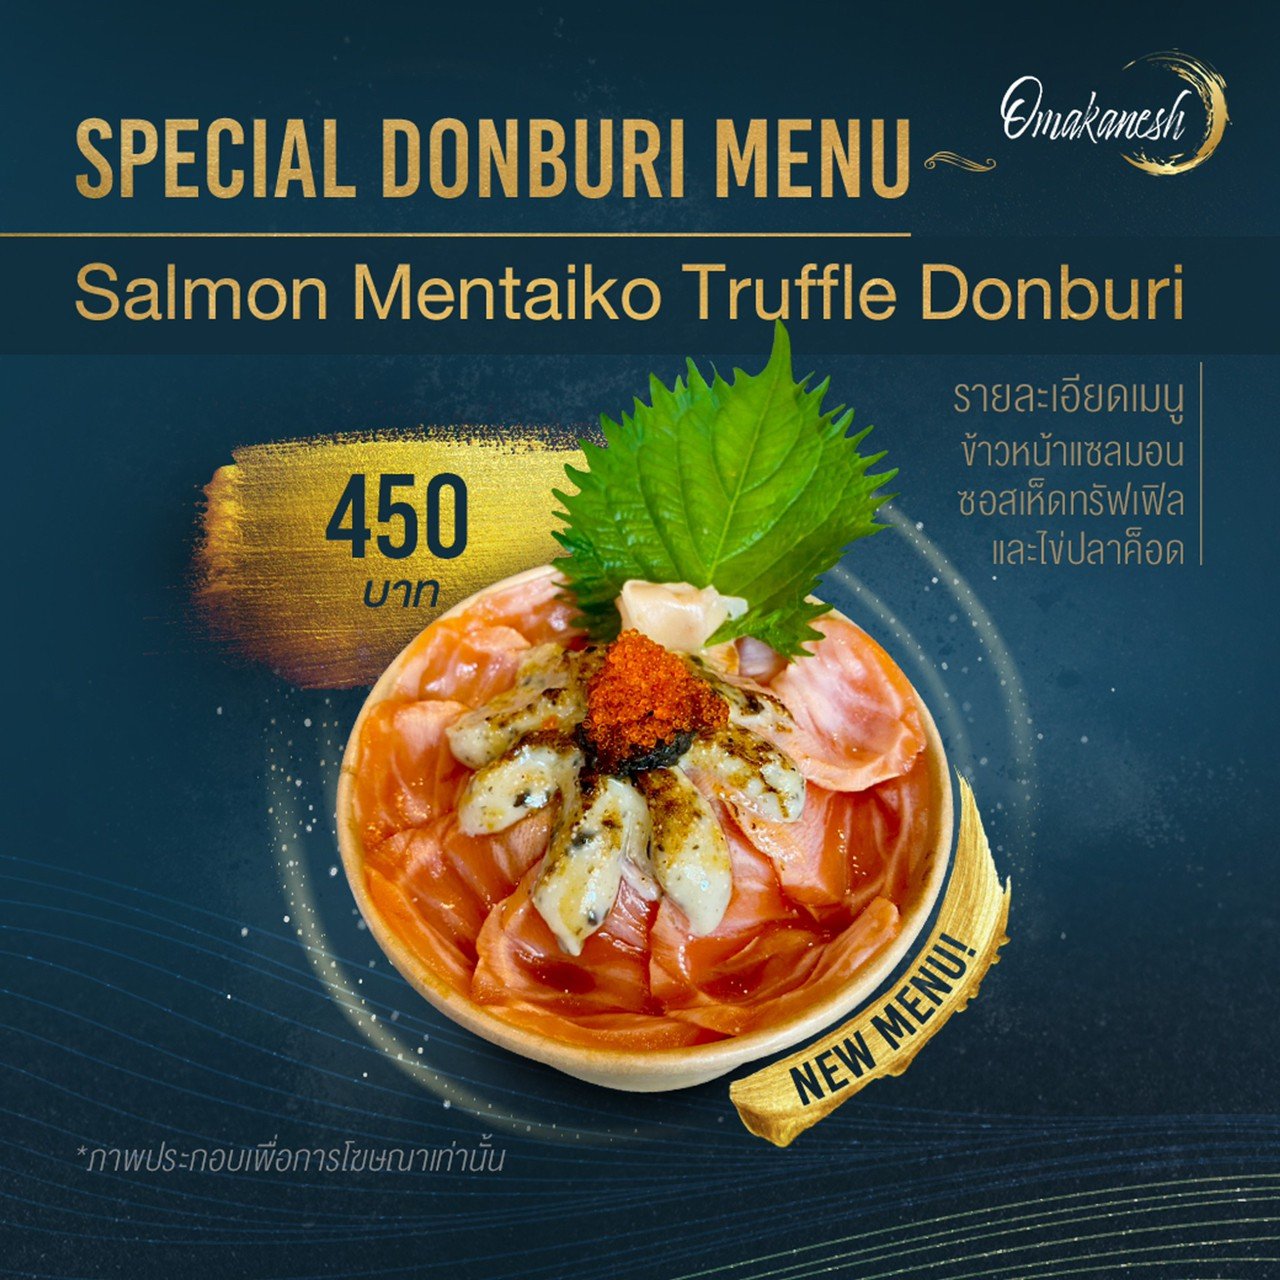 Salmon Mentaiko Truffle Donburi